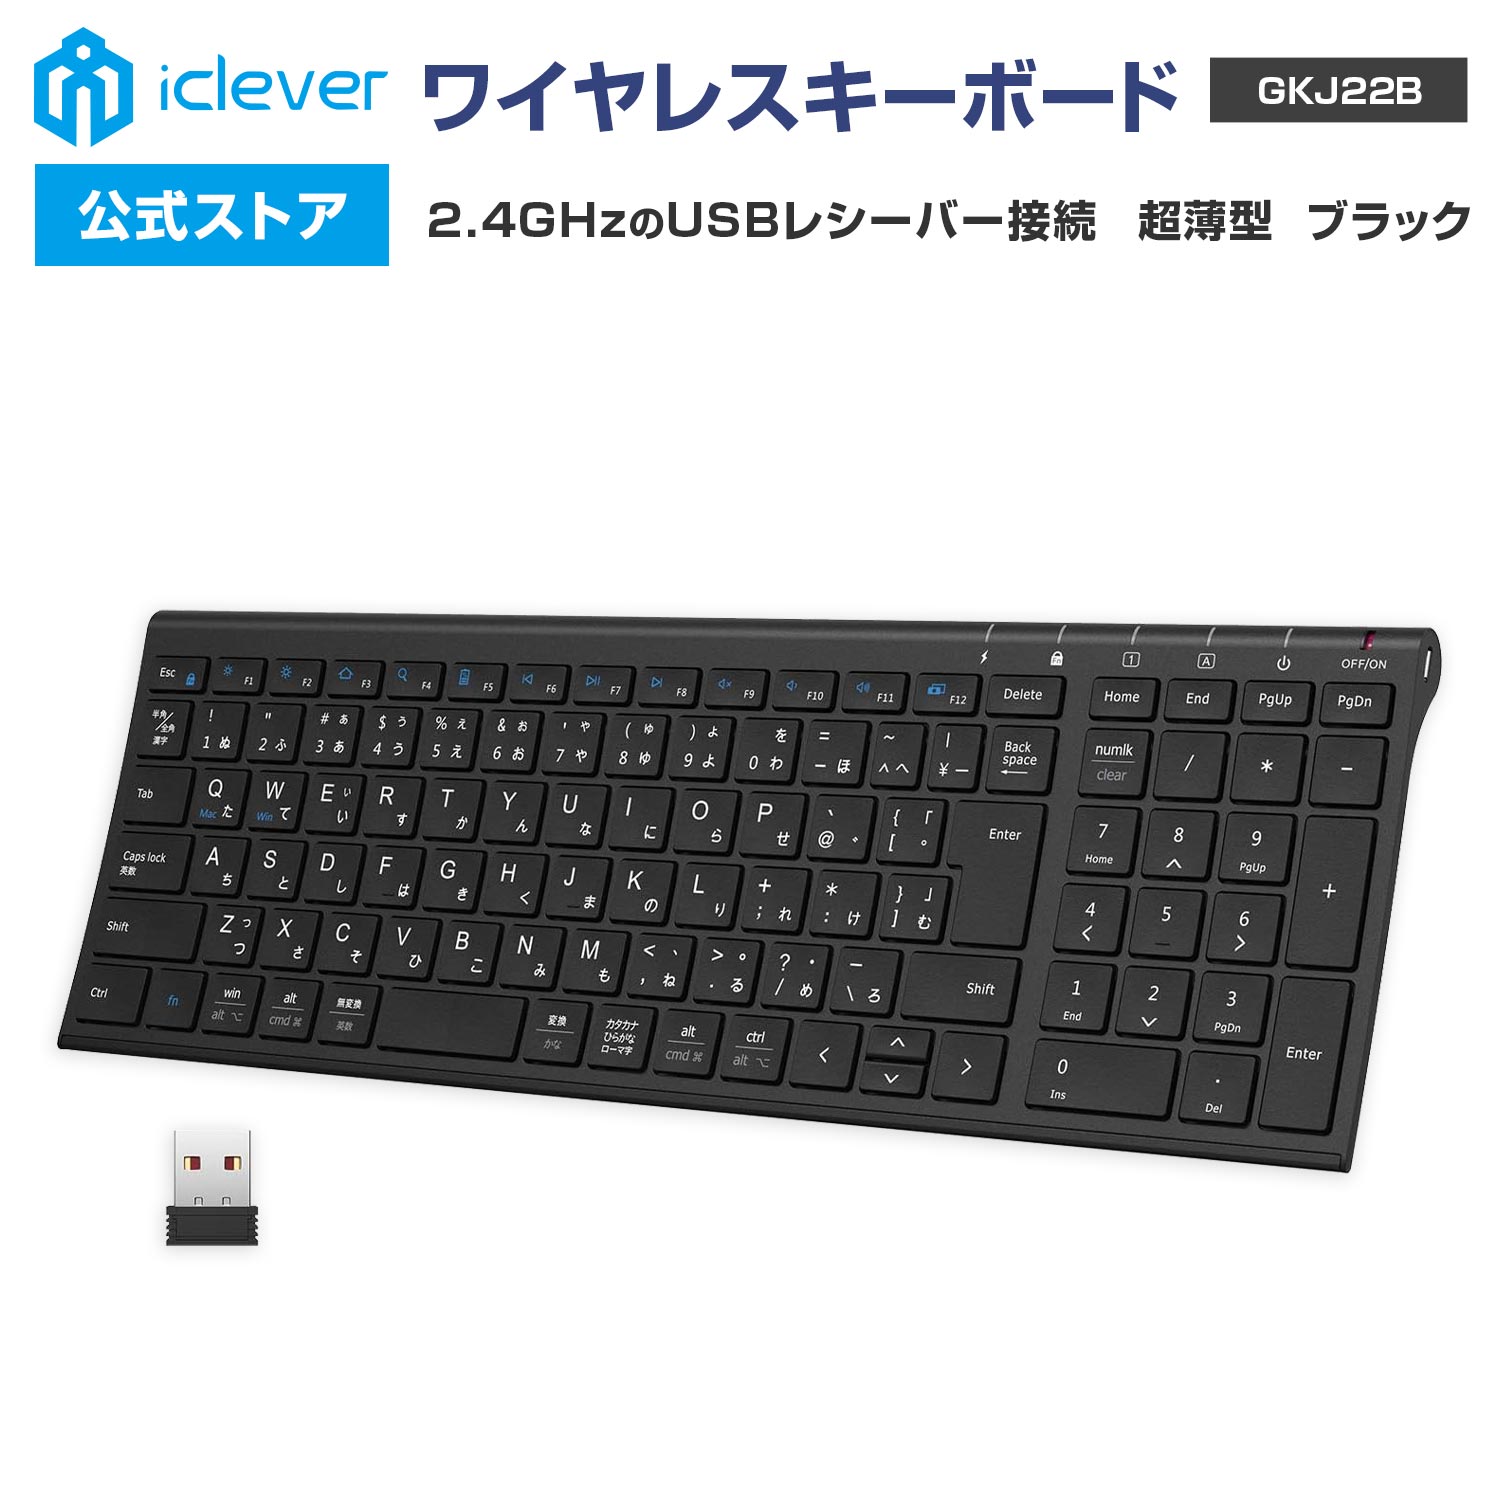 【iClever公式】 【お買い物マラソン P20倍】 ワイヤレスキーボード GKJ22B 2.4GHz接続 USBレシーバー接続 テンキー搭載 日本語配列 超薄型 パンタグラフ式 スタイリッシュ ガジェット 新生活 …